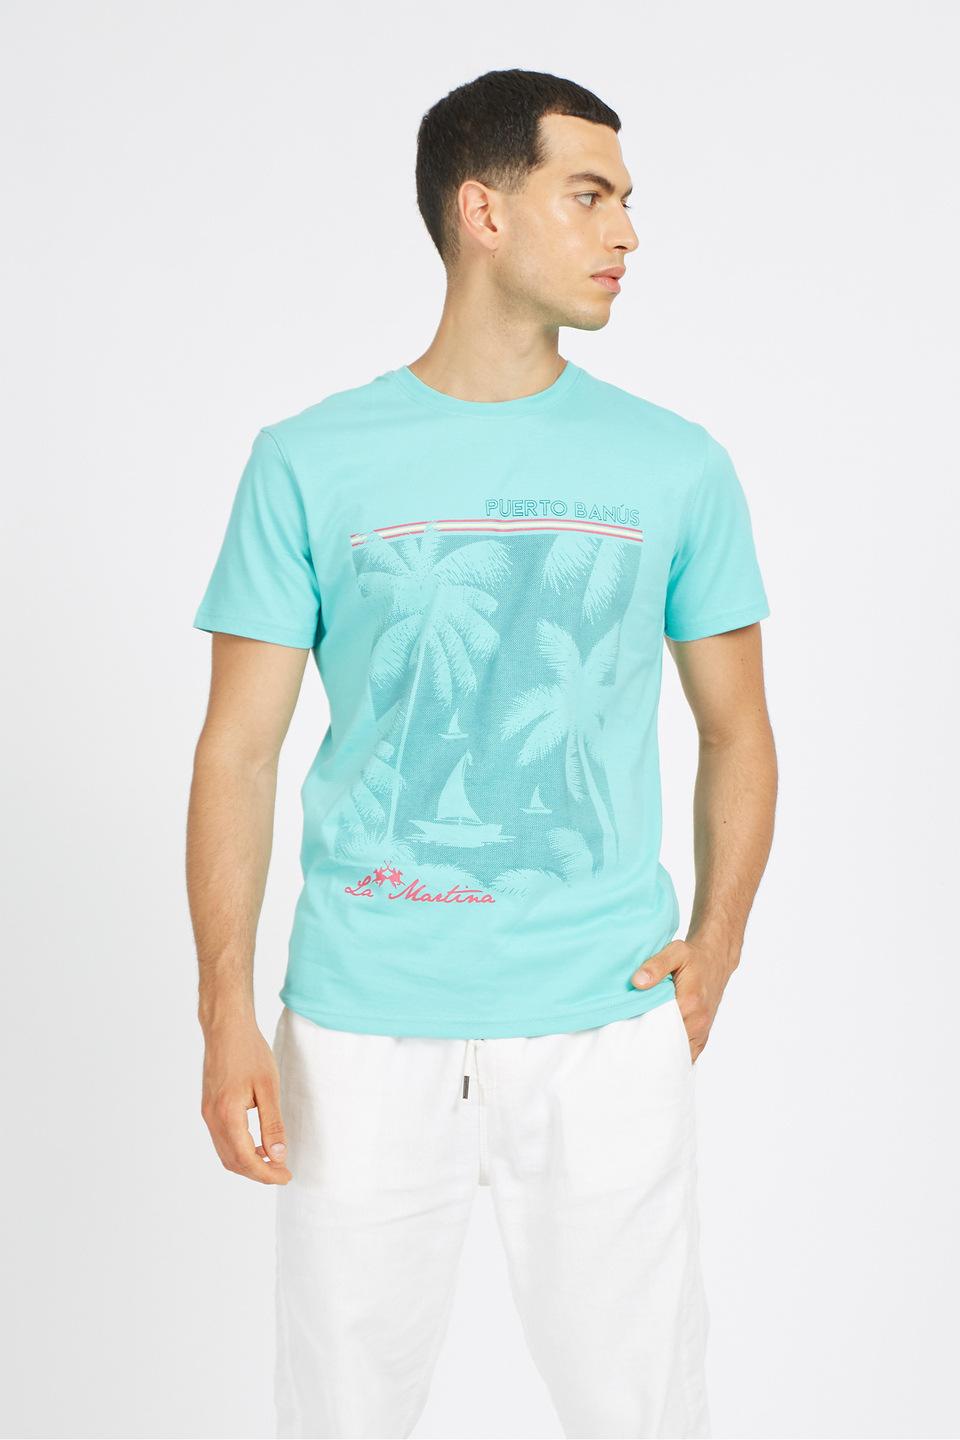 Plain men's cotton T-shirt with a print on the front - La Martina - Official Online Shop